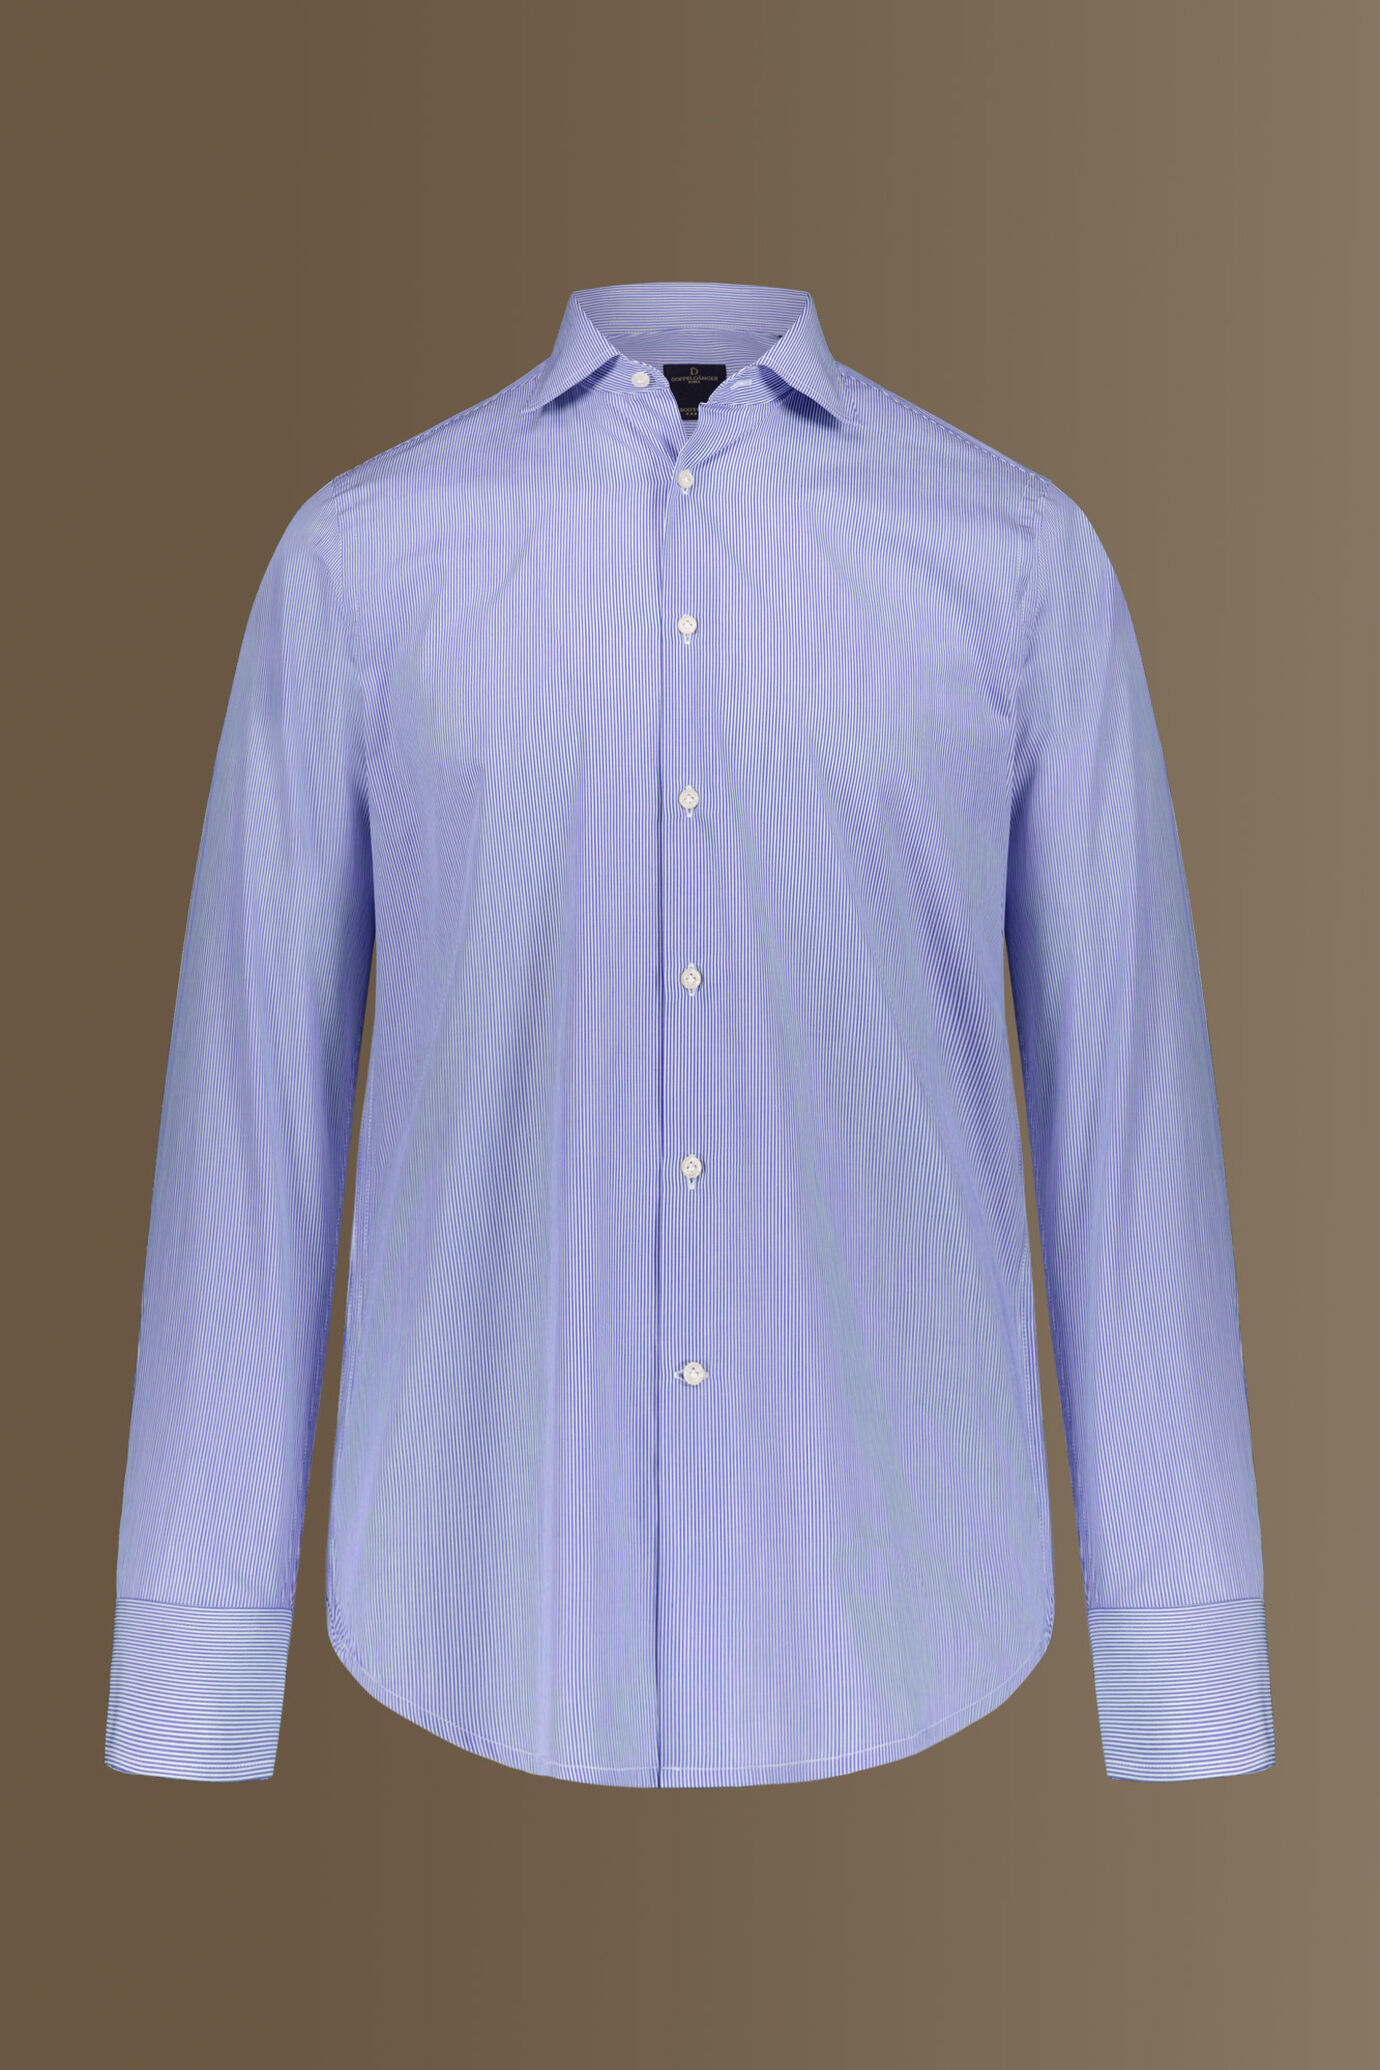 Camicia classica uomo collo francese 100% cotone tinto filo riga stretta image number 4